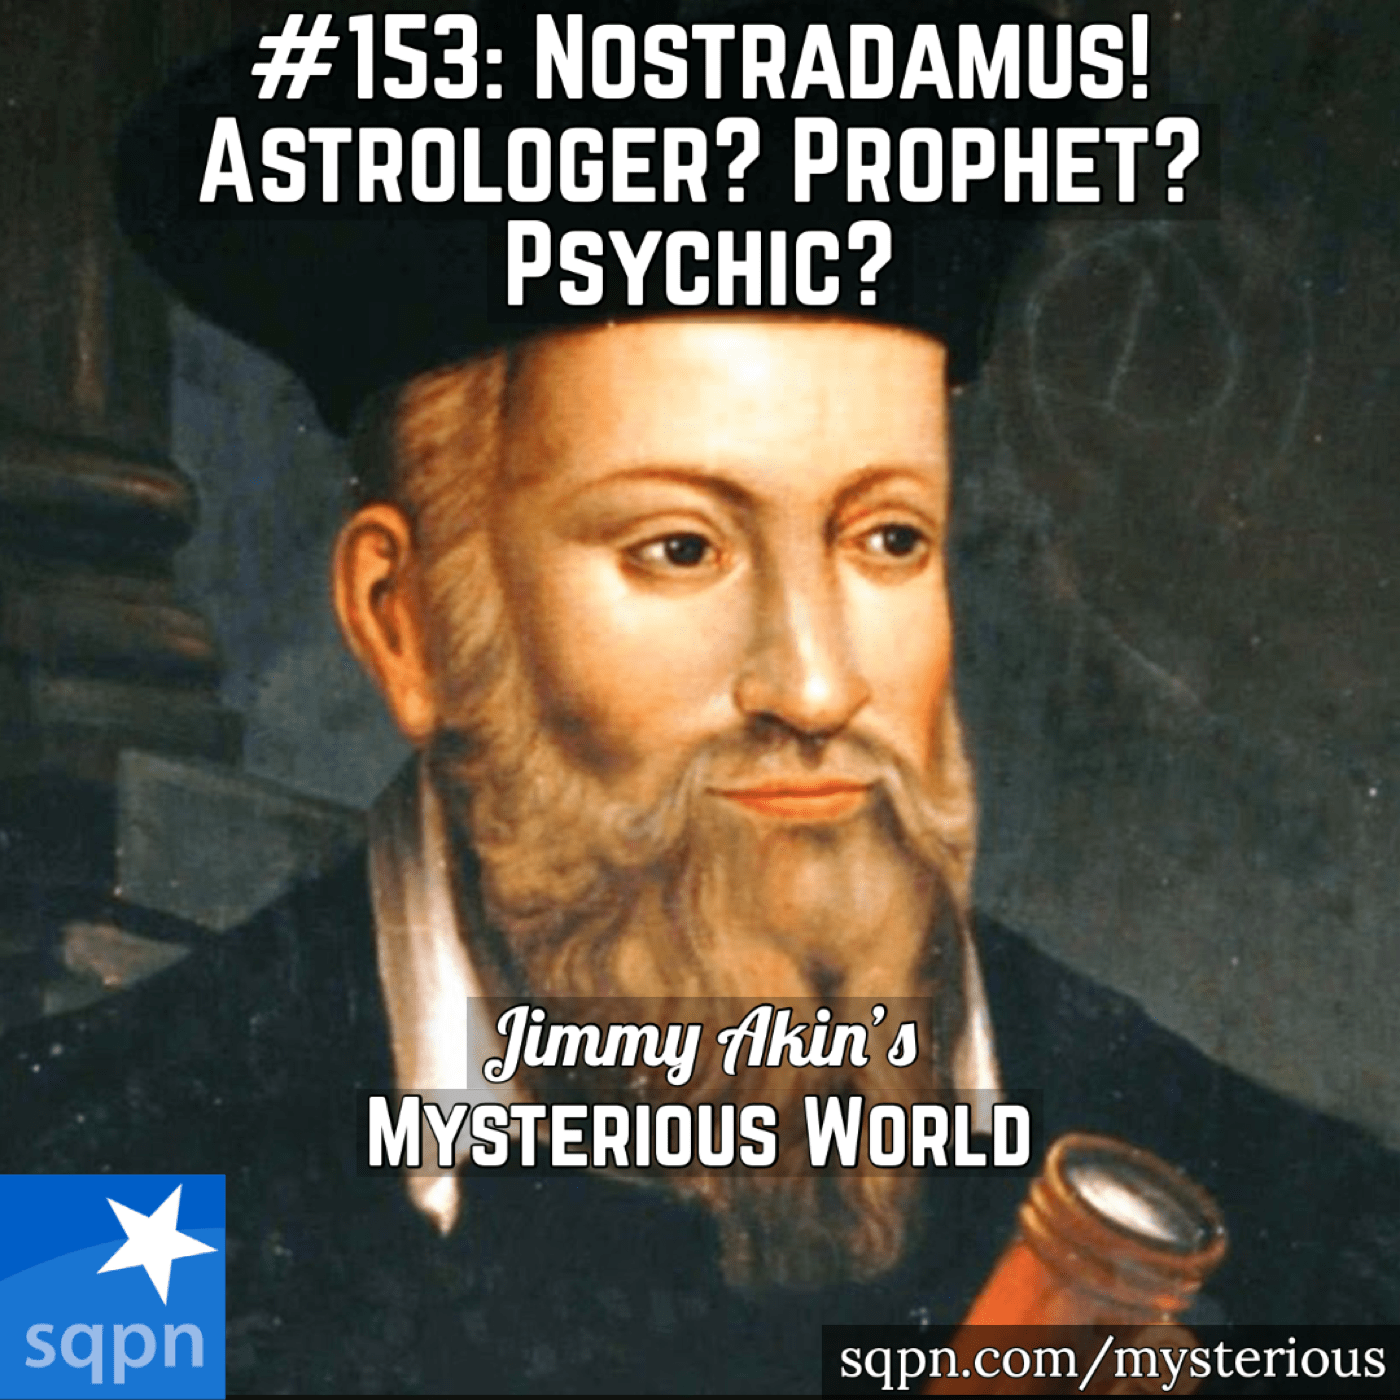 Nostradamus (Astrologer? Prophet? Psychic?)